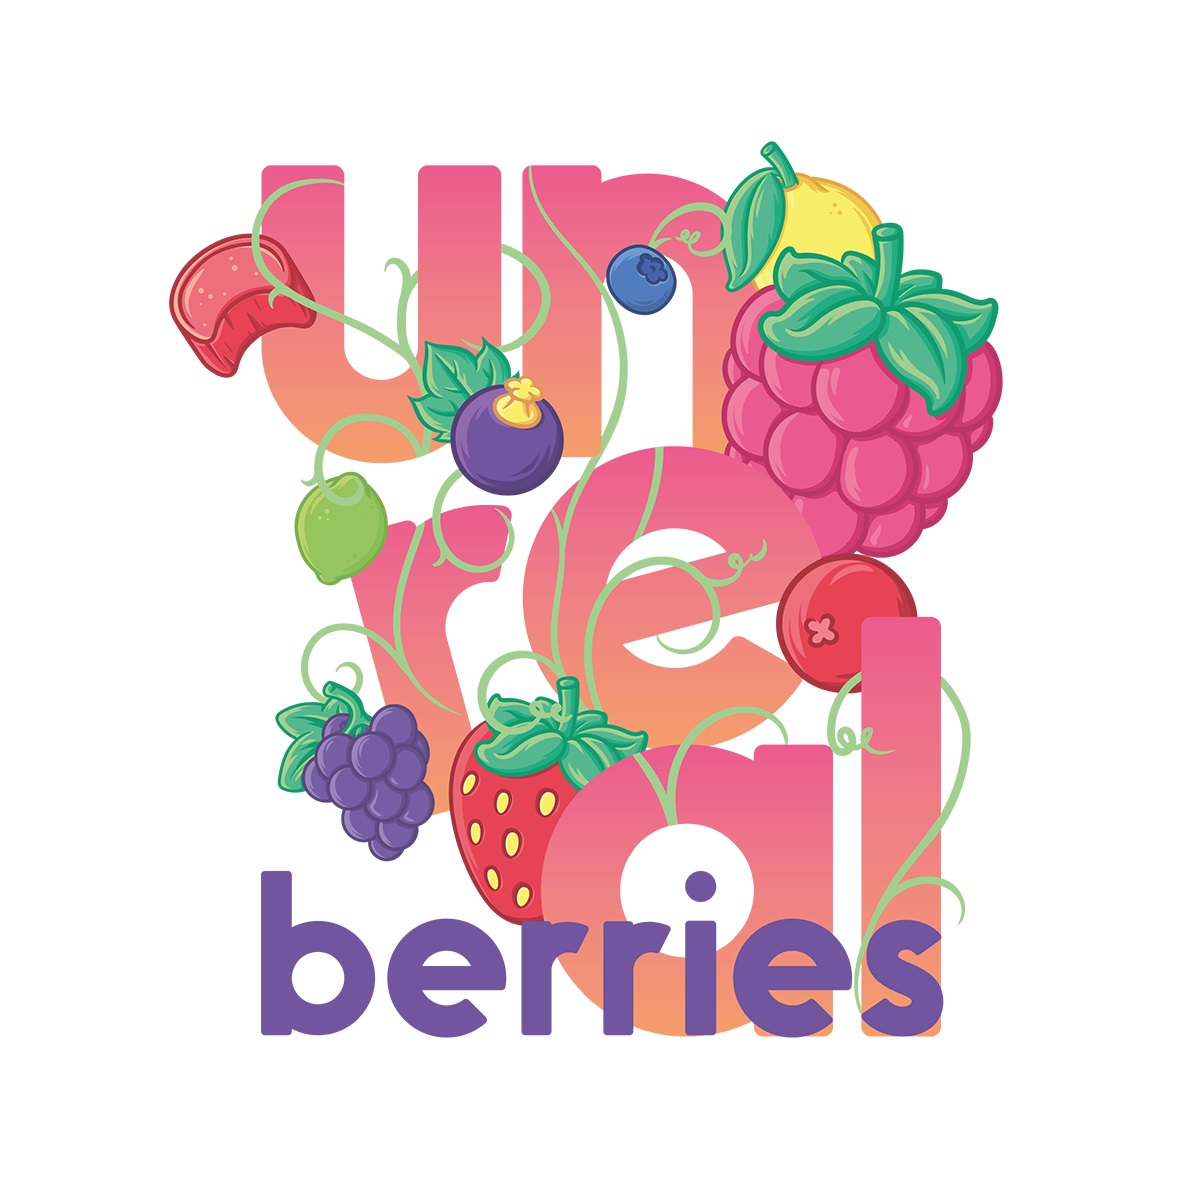 unreal berries logo uk